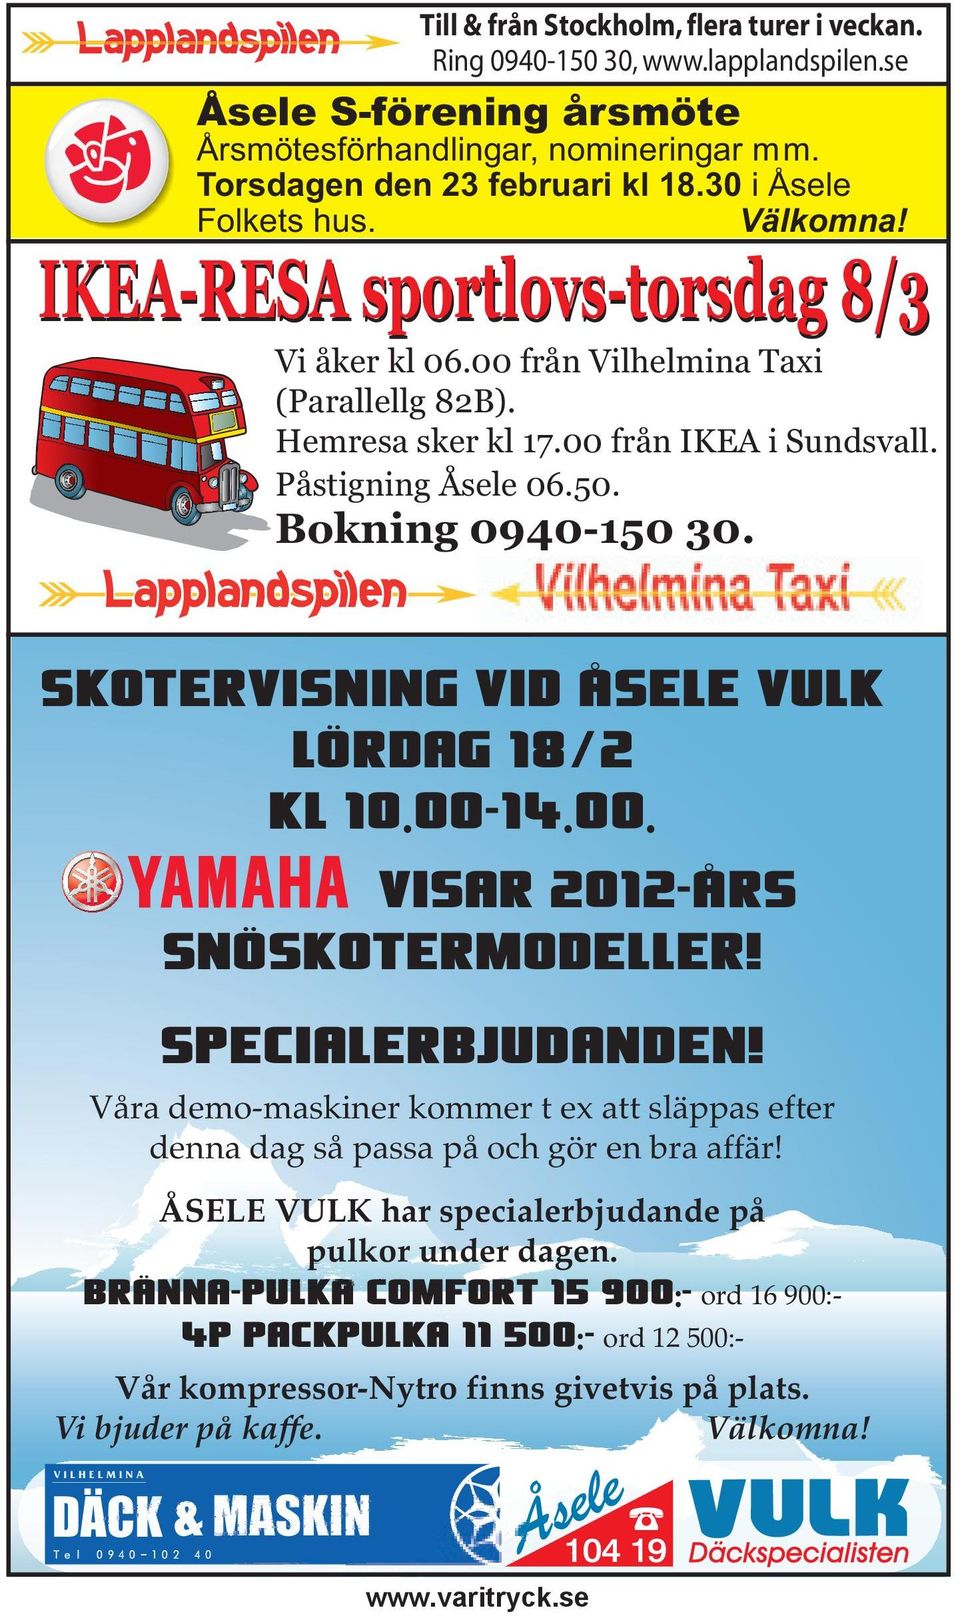 Bokning 0940-150 30. Skotervisning vid Åsele Vulk Lördag 18/2 kl 10.00-14.00. visar 2012-års snöskotermodeller! Specialerbjudanden!